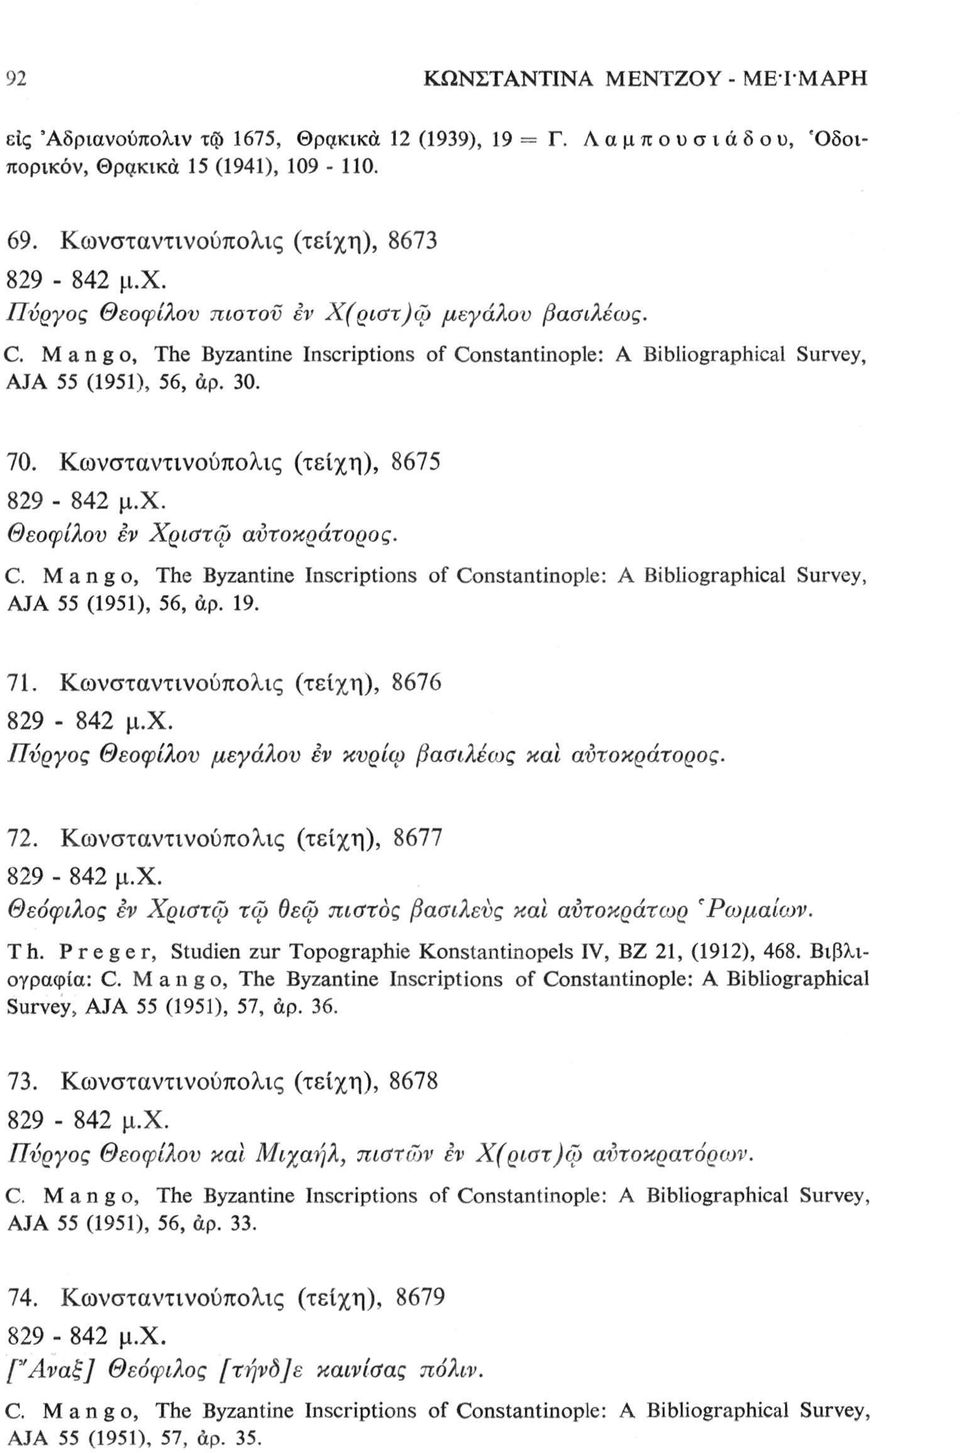 Κωνσταντινούπολις (τείχη), 8675 829-842 μ.χ. Θεοφίλου εν Χριστώ αύτοκράτορος. C. Mango, The Byzantine Inscriptions of Constantinople: A Bibliographical Survey, AJA 55 (1951), 56, άρ. 19. 71.